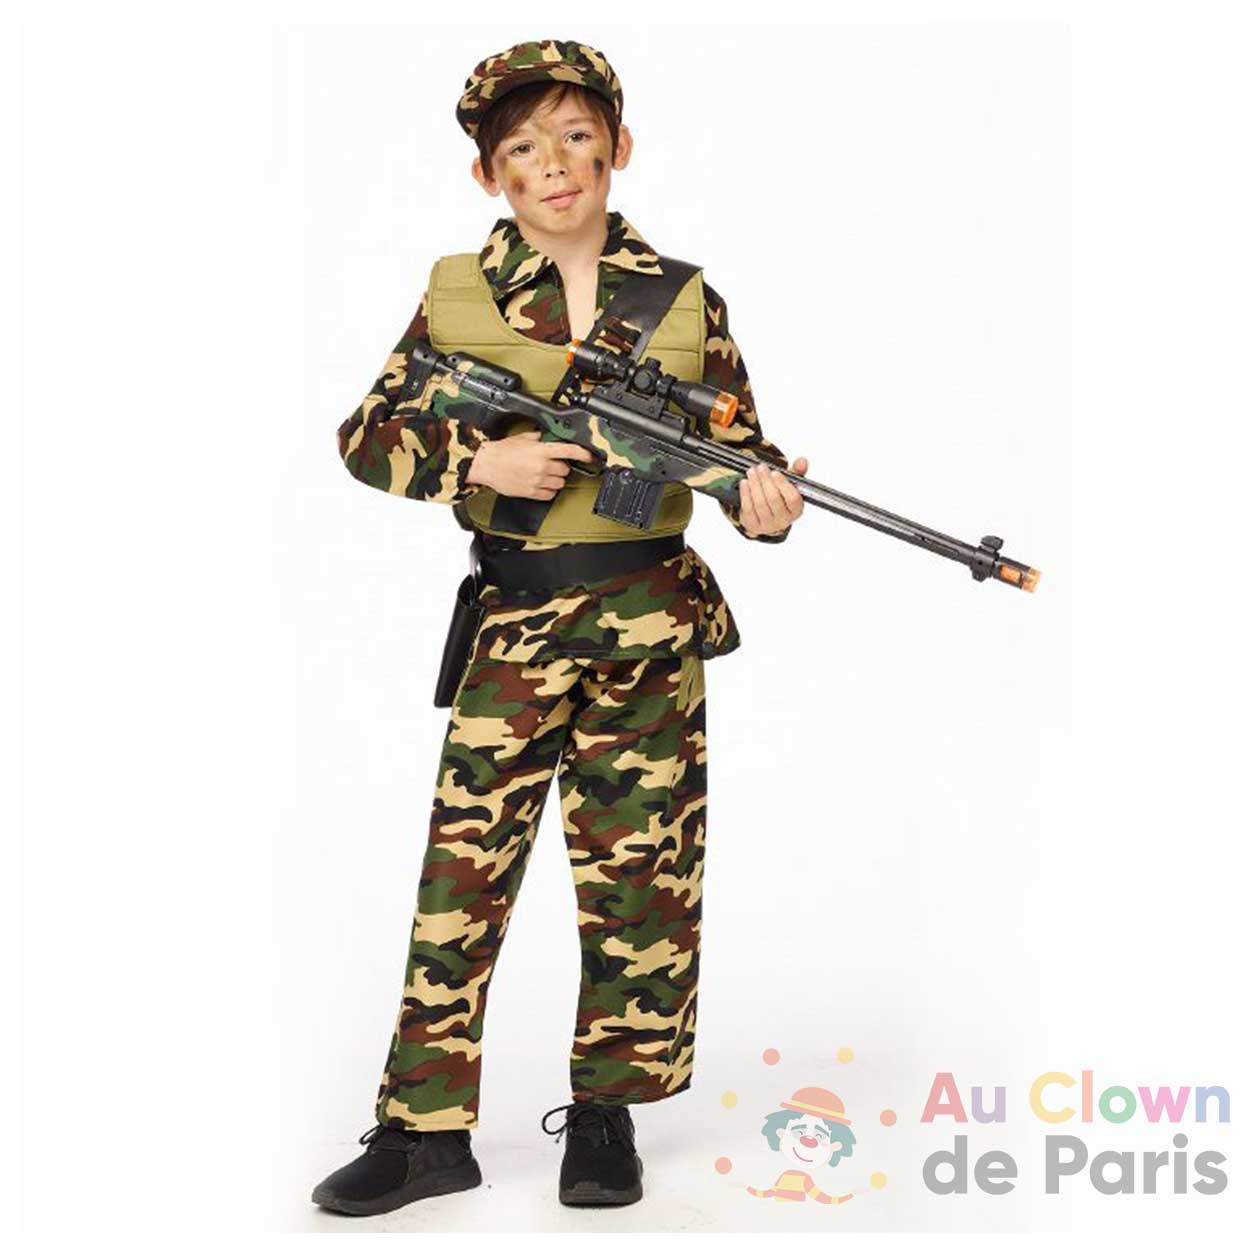 Déguisement militaire enfant - Au Clown de Paris